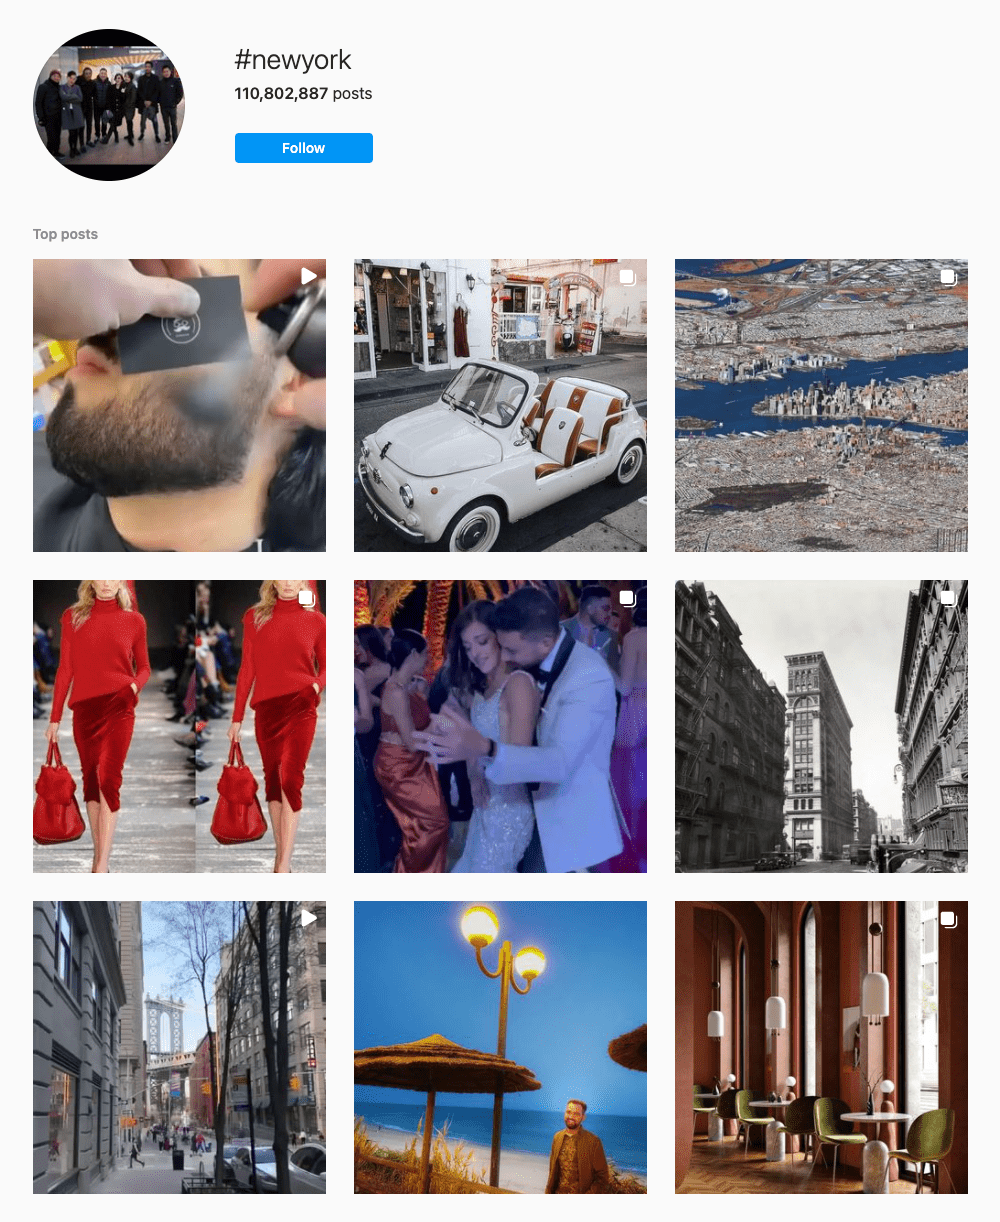 #newyork Hashtags for Instagram